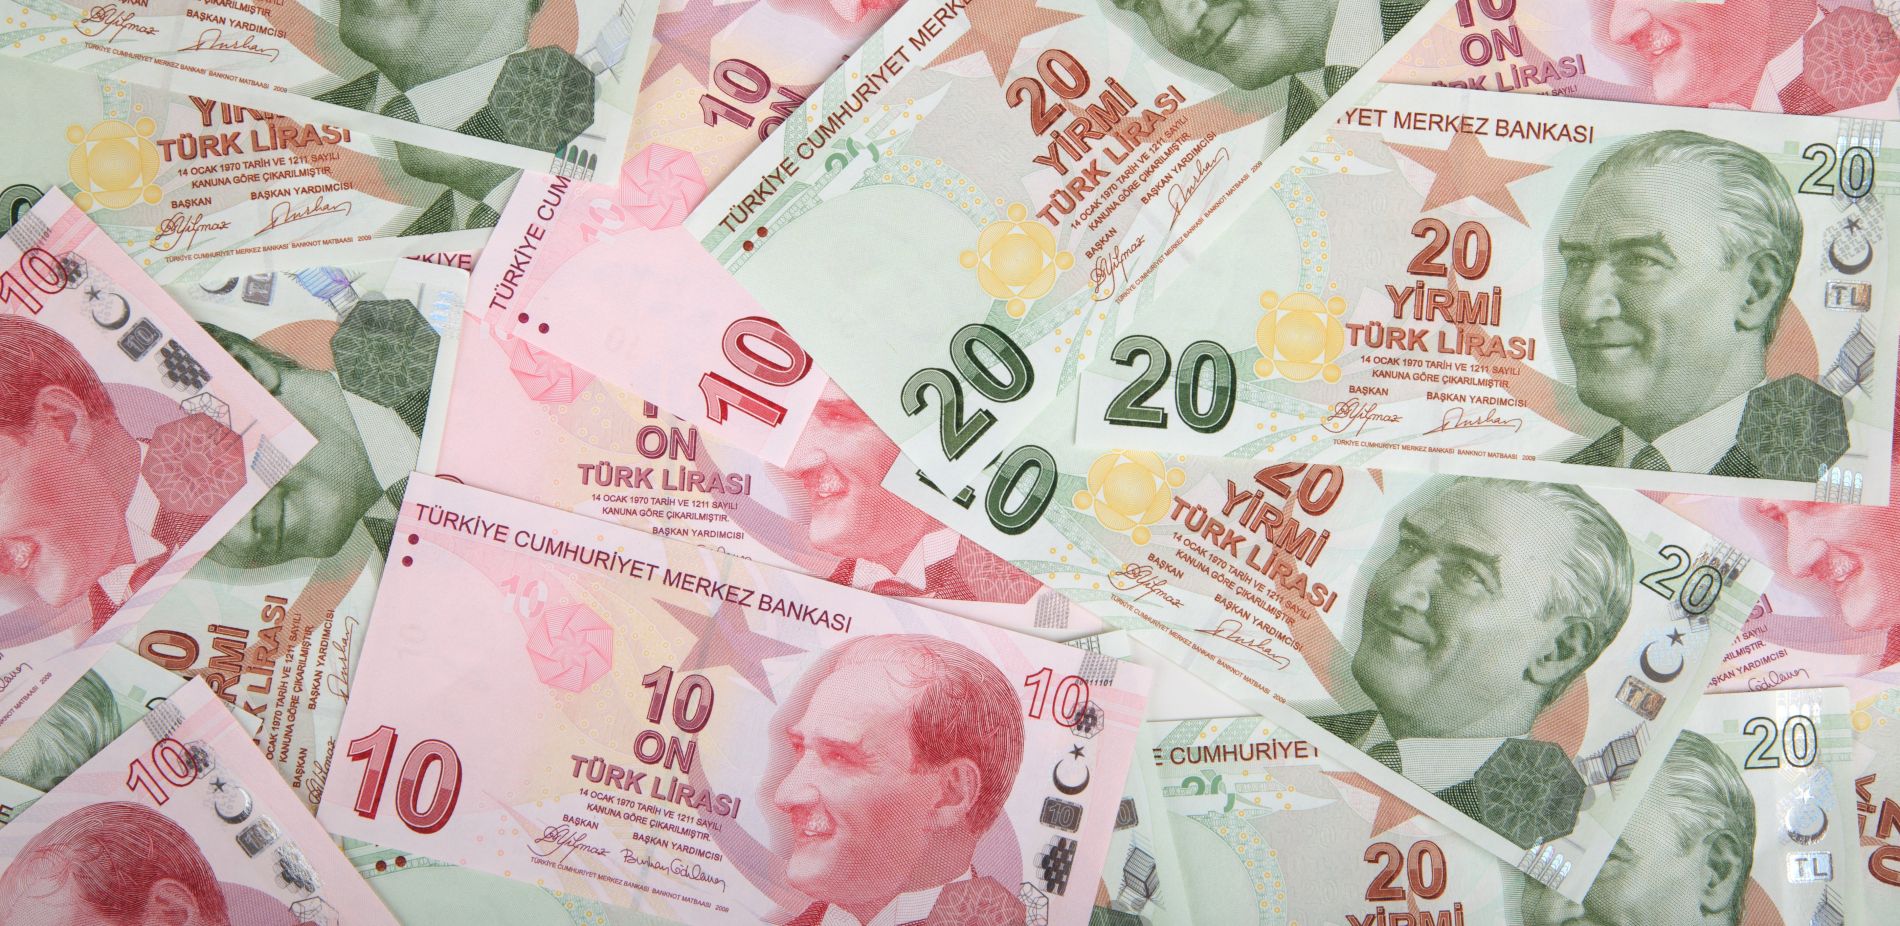 Erdogan ‘odlučan’ smanjiti kamatne stope u bankovnom sustavu